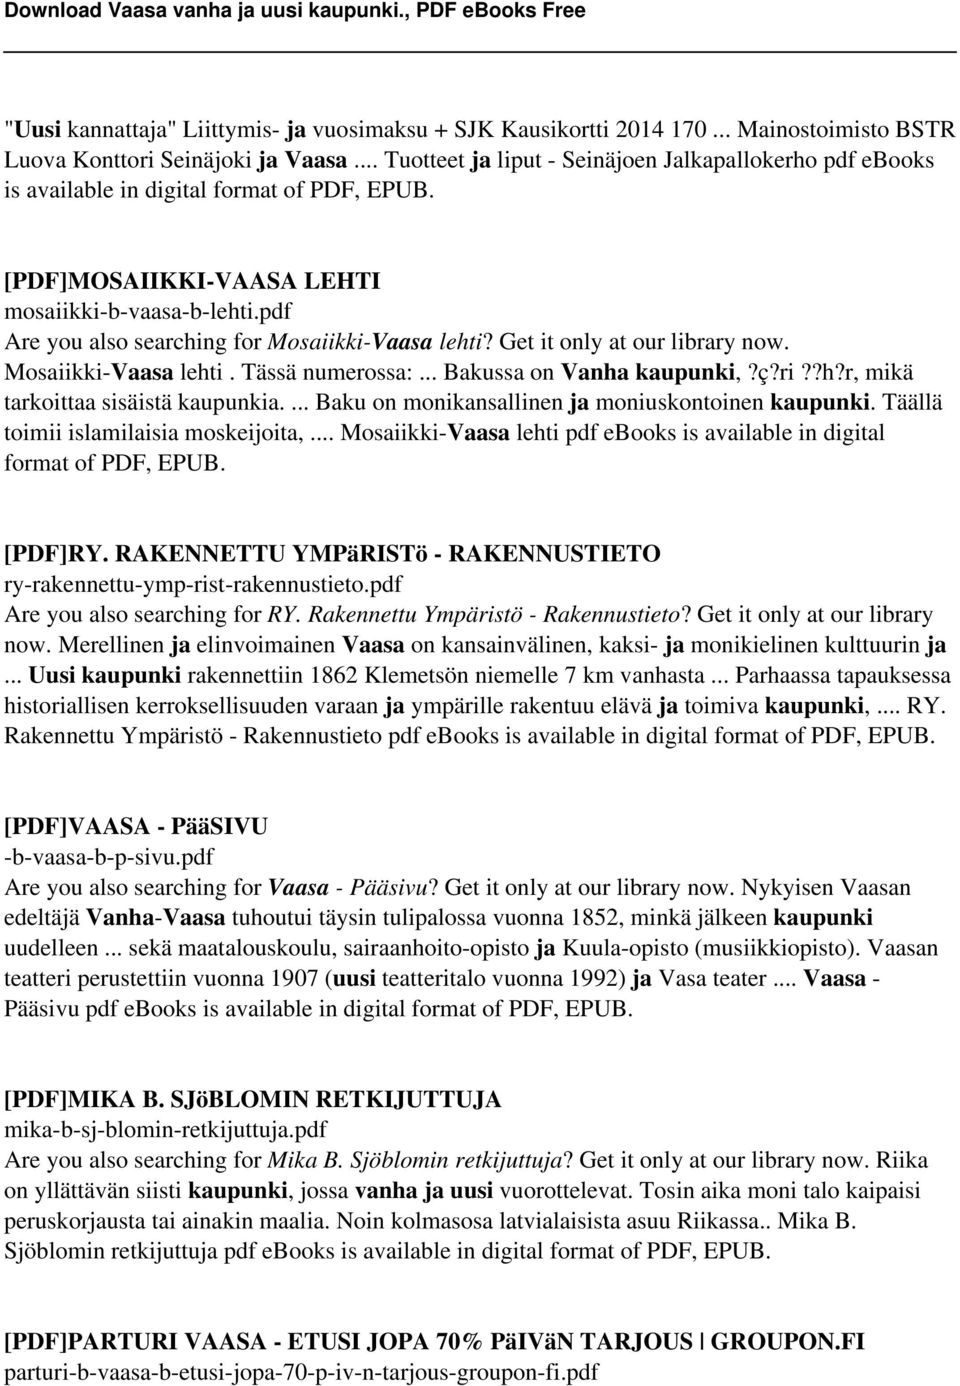 pdf Are you also searching for Mosaiikki-Vaasa lehti? Get it only at our library now. Mosaiikki-Vaasa lehti. Tässä numerossa:... Bakussa on Vanha kaupunki,?ç?ri??h?r, mikä tarkoittaa sisäistä kaupunkia.